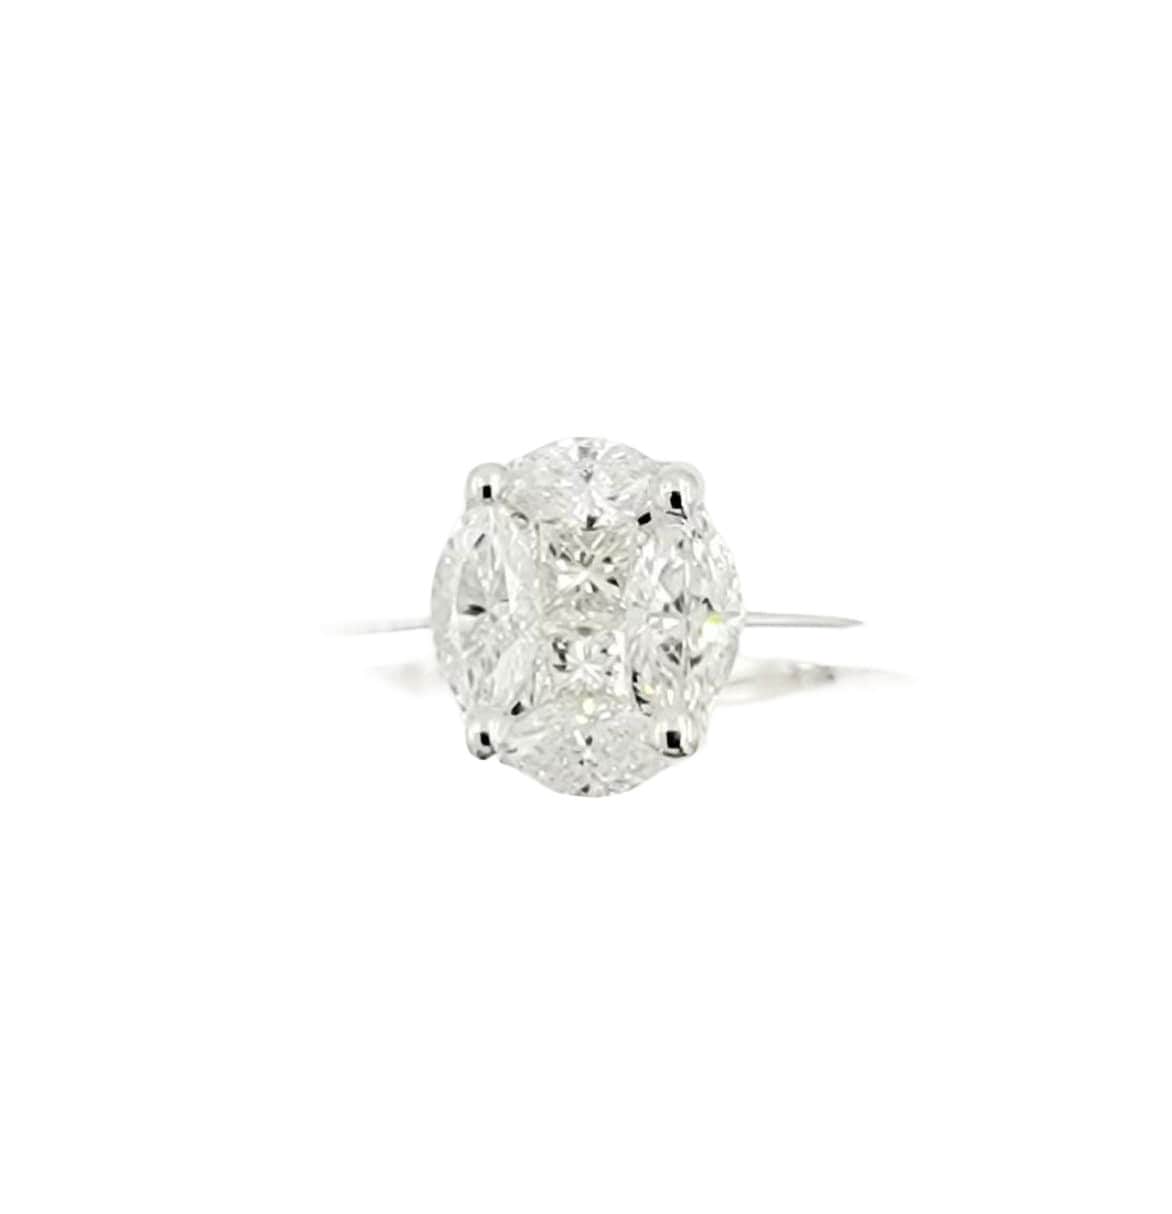 18k White Gold Diamond Cluster Ring